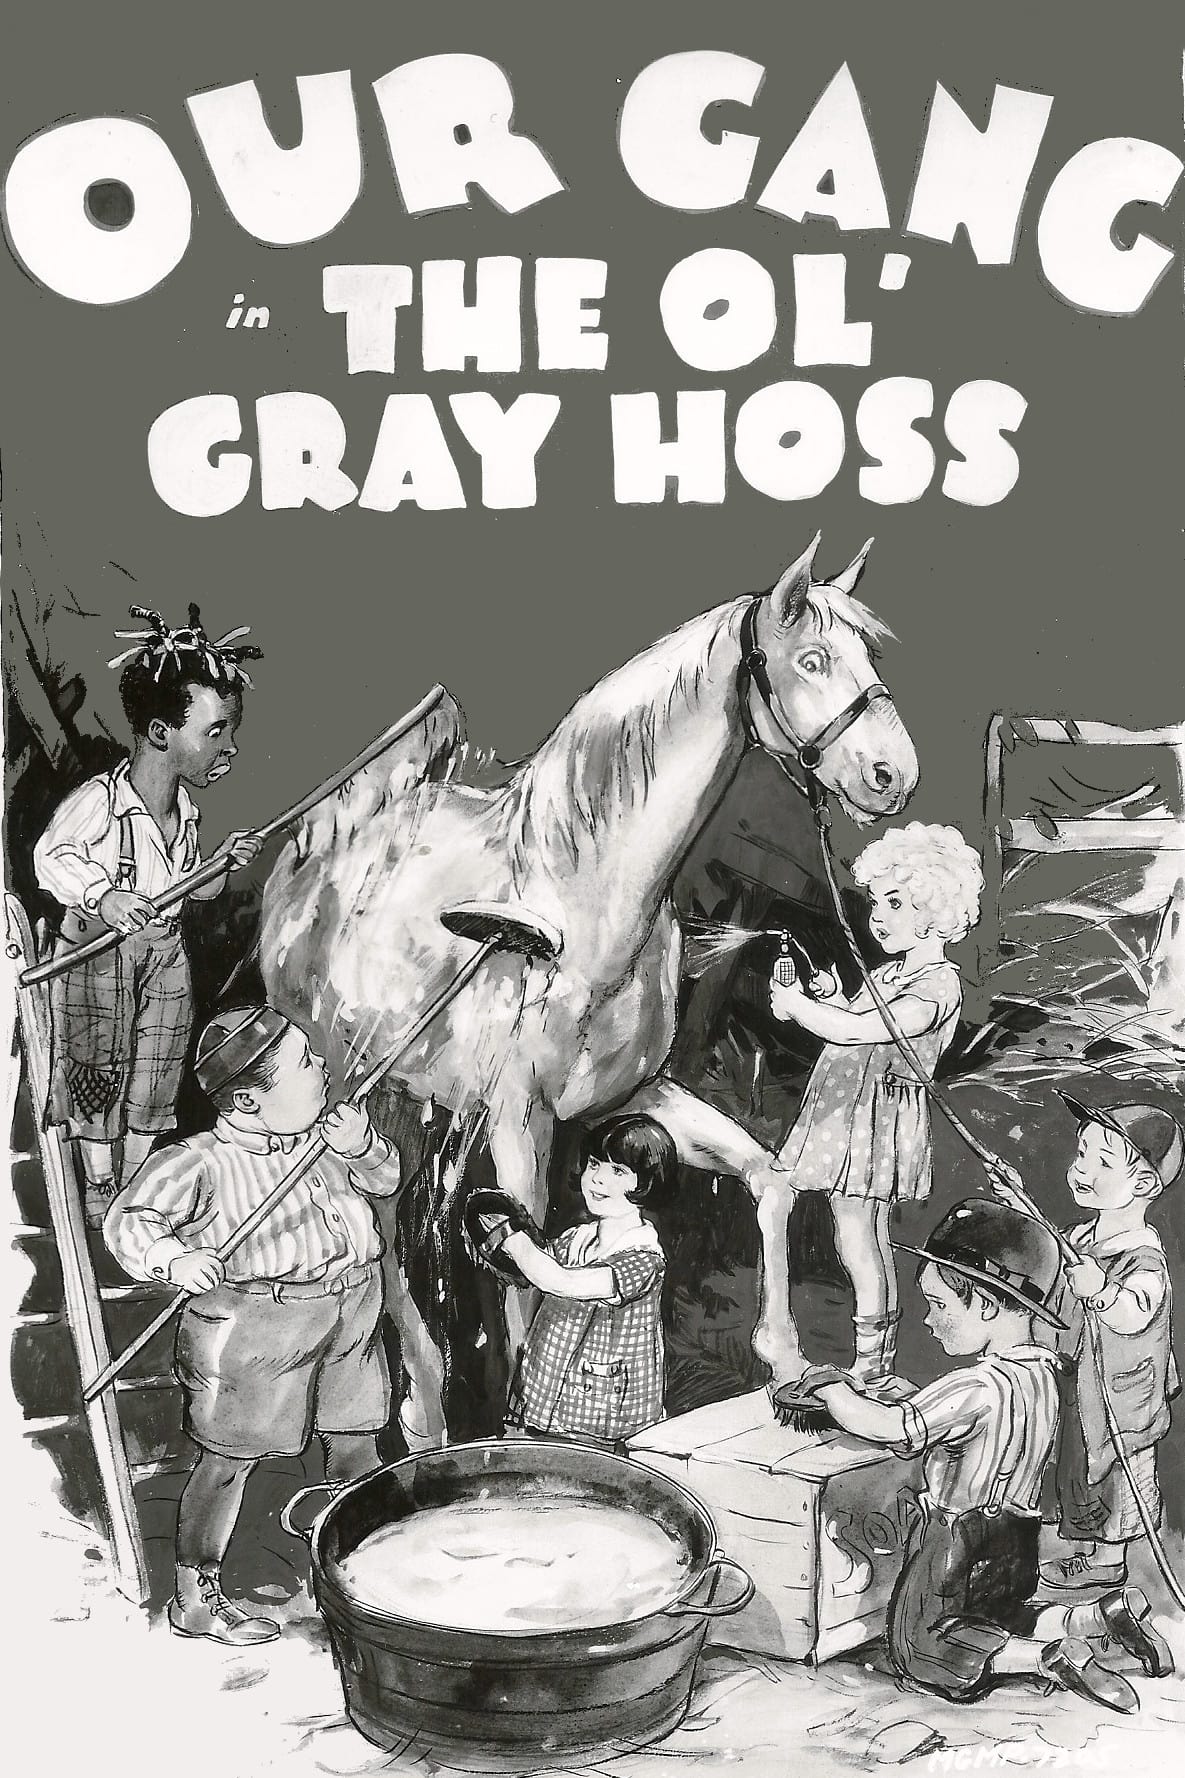 The Ol' Gray Hoss